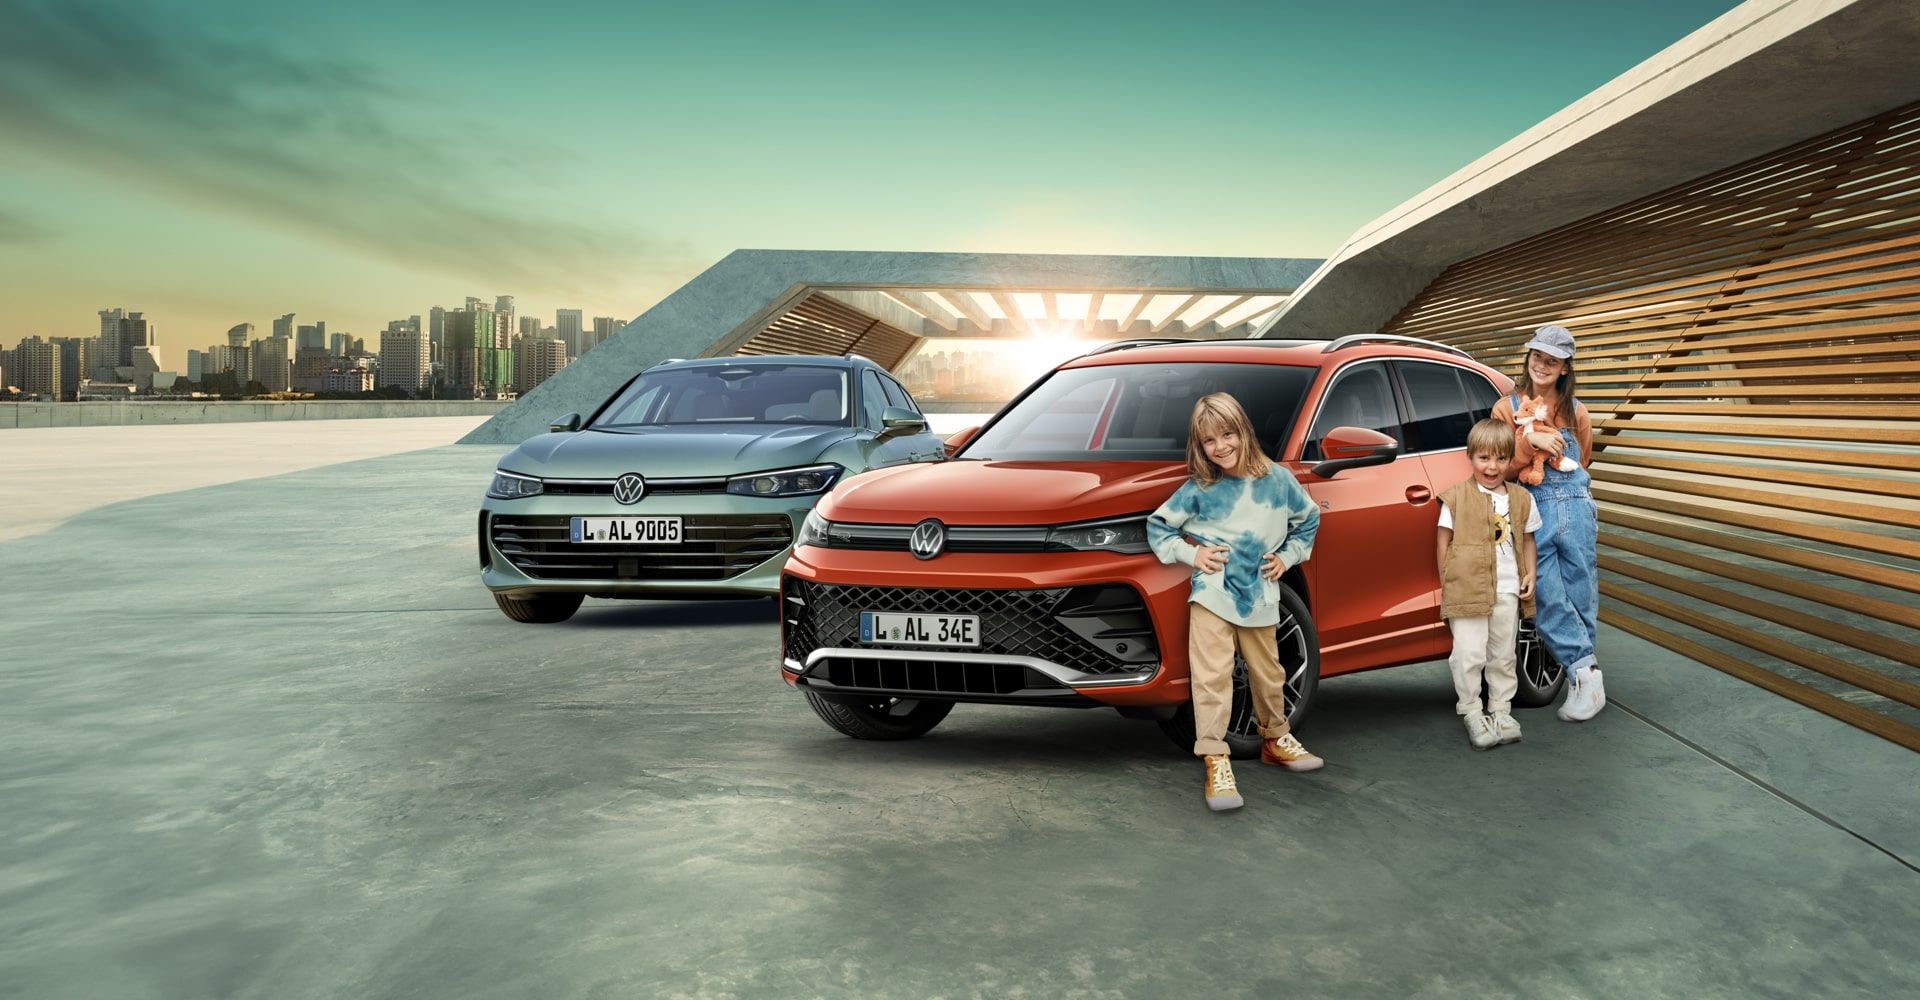 3 Kinder stehen vor einem Persimmon Red Metallic VW Tiguan. Links davon befindet sich ein neuer Passat in Maripositgrün Metallic. Im Hintergrund erkennt man eine Skyline und ein modernes Gebäude.